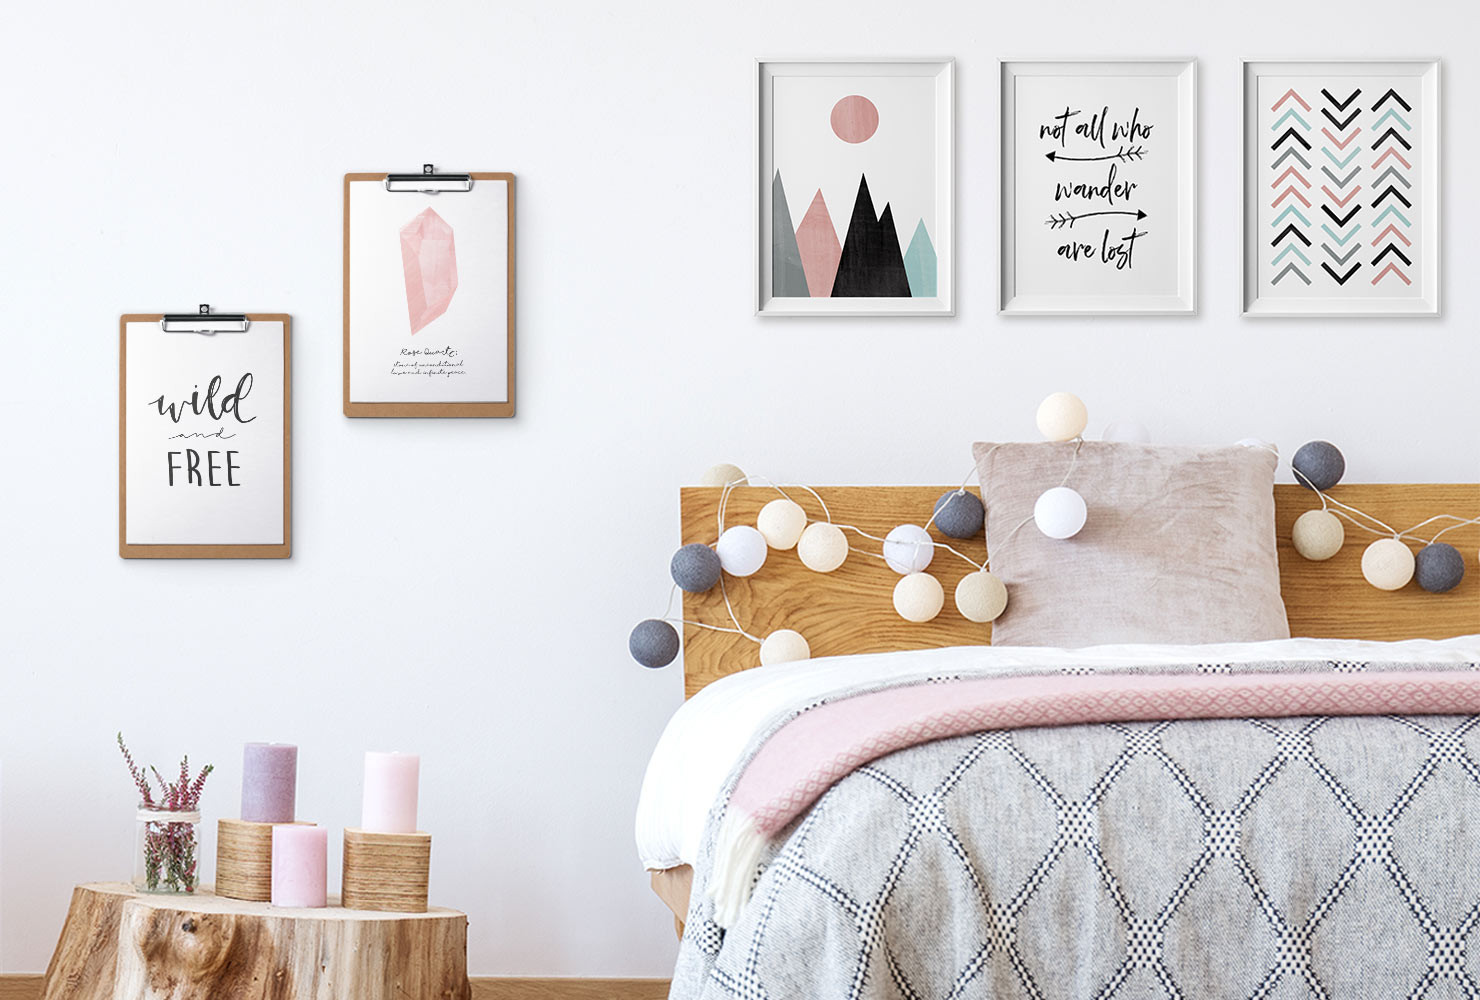 Diy Bedroom Decor
 24 DIY Bedroom Decor Ideas To Inspire You With Printables